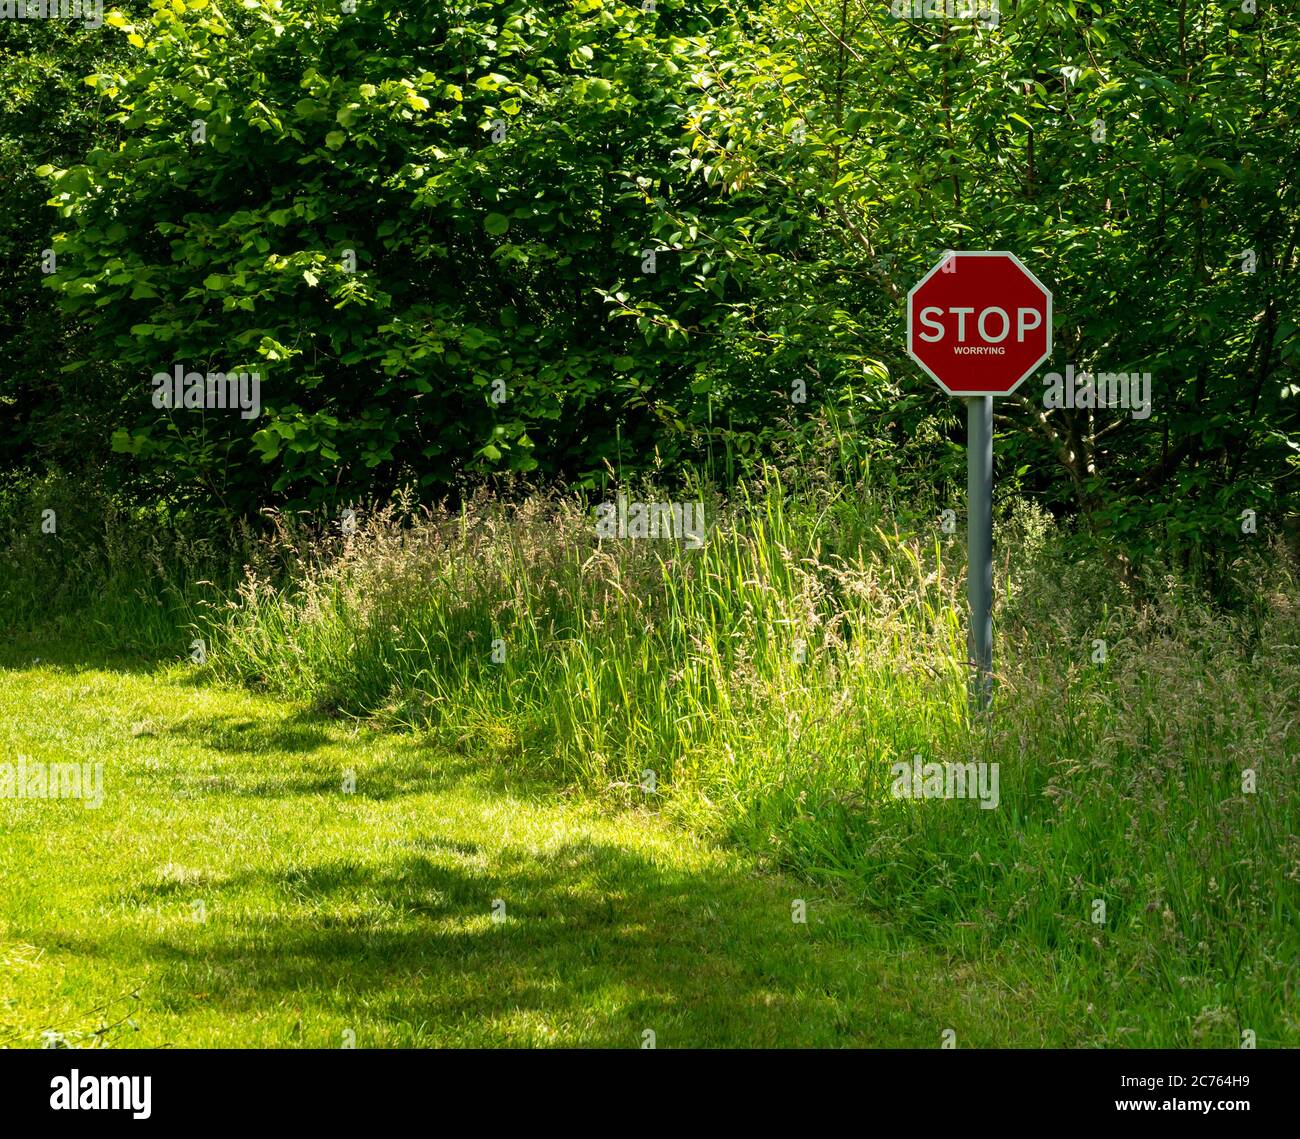 Schrullige Kunstwerke Stoppen Sie sich Sorgen Warnschild auf grasbewachsenen Landweg, Gifford, East Lothian, Schottland, Großbritannien Stockfoto